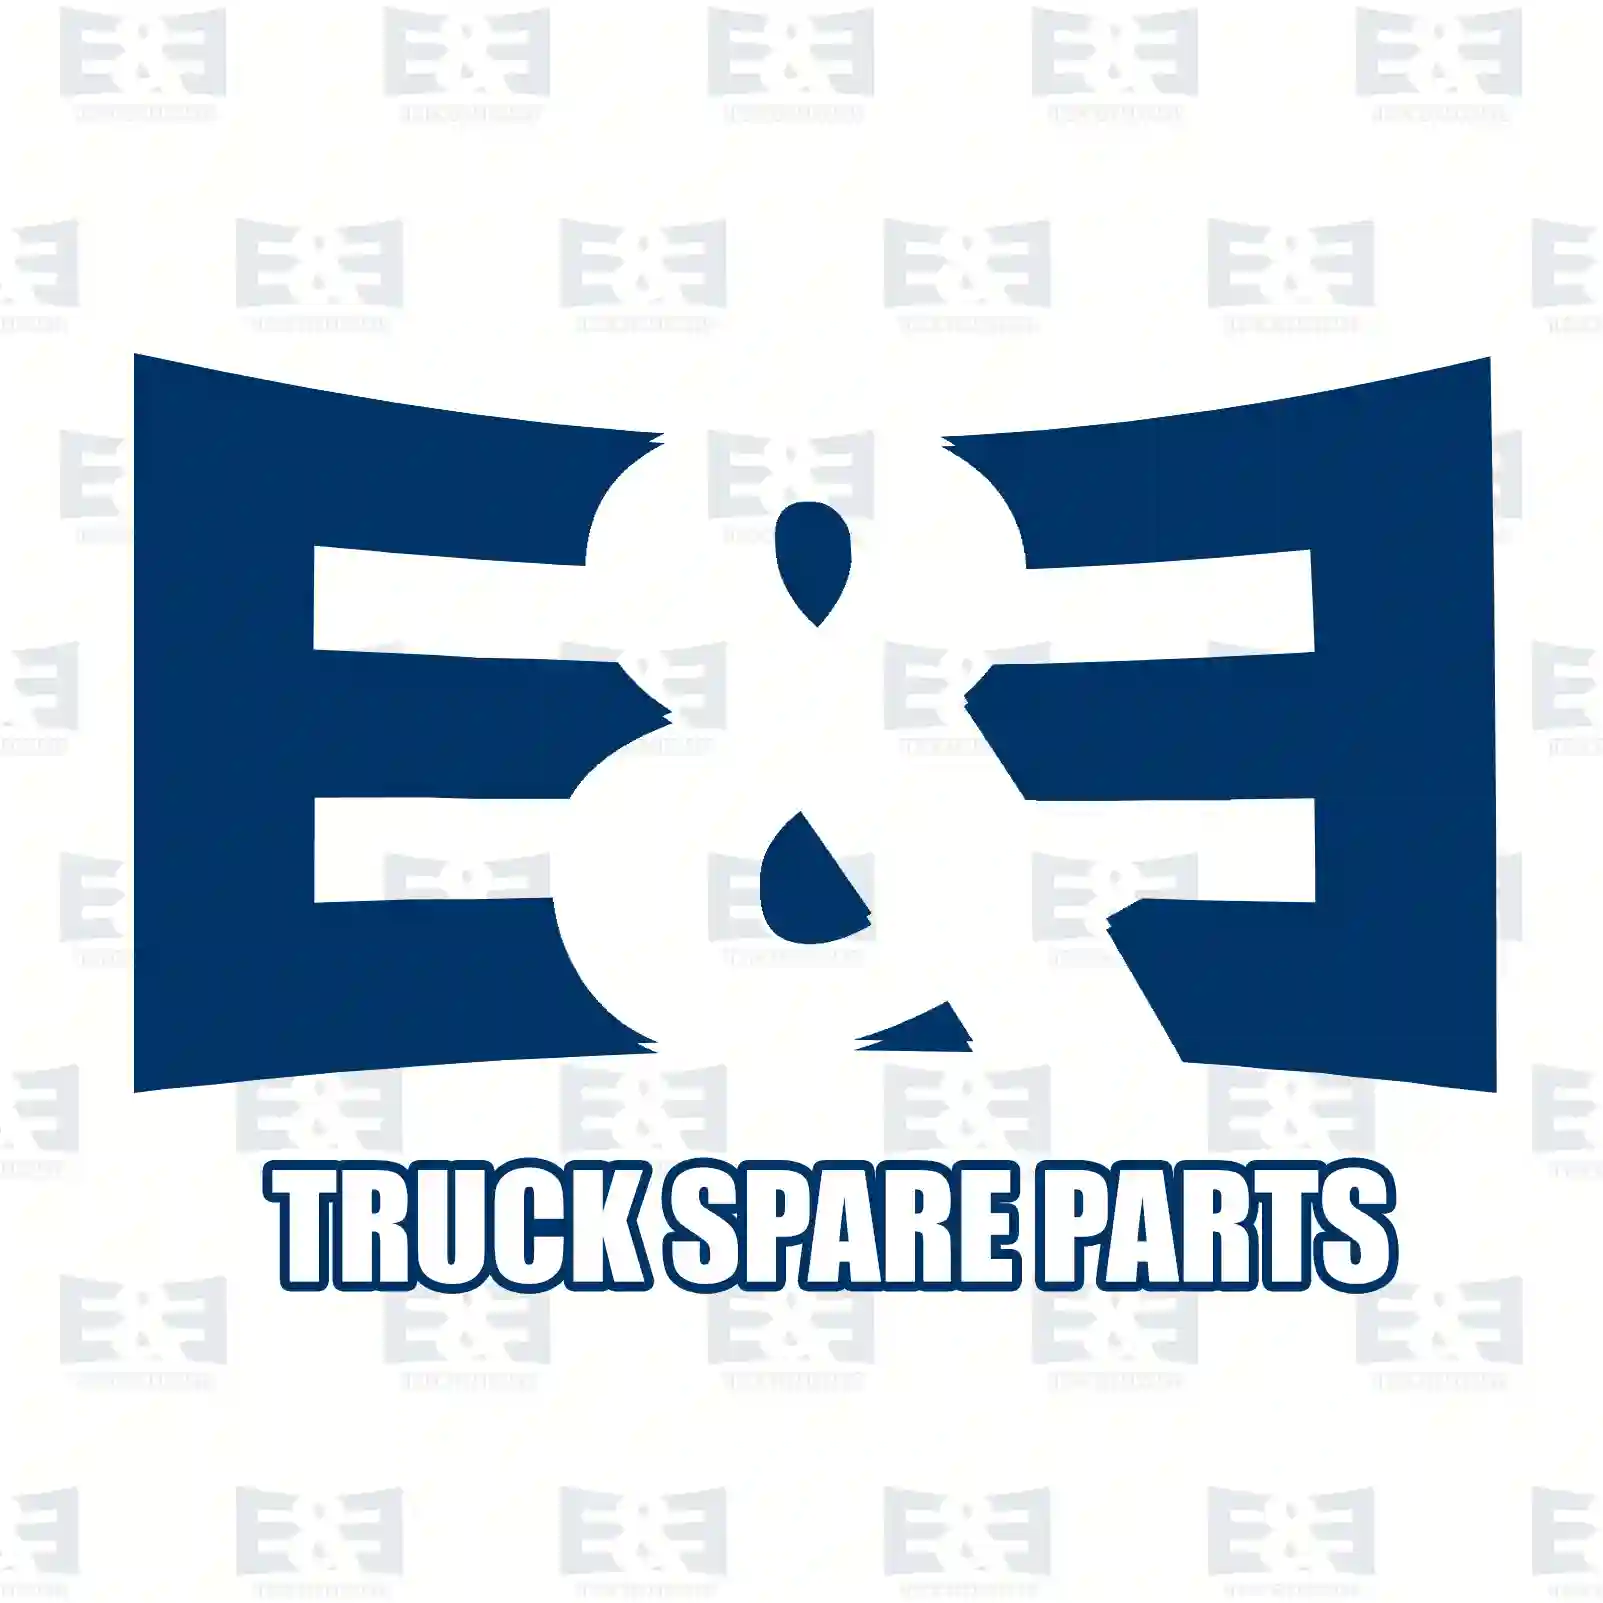 Cabin shock absorber, 2E2276647, 5010130413, 50101 ||  2E2276647 E&E Truck Spare Parts | Truck Spare Parts, Auotomotive Spare Parts Cabin shock absorber, 2E2276647, 5010130413, 50101 ||  2E2276647 E&E Truck Spare Parts | Truck Spare Parts, Auotomotive Spare Parts